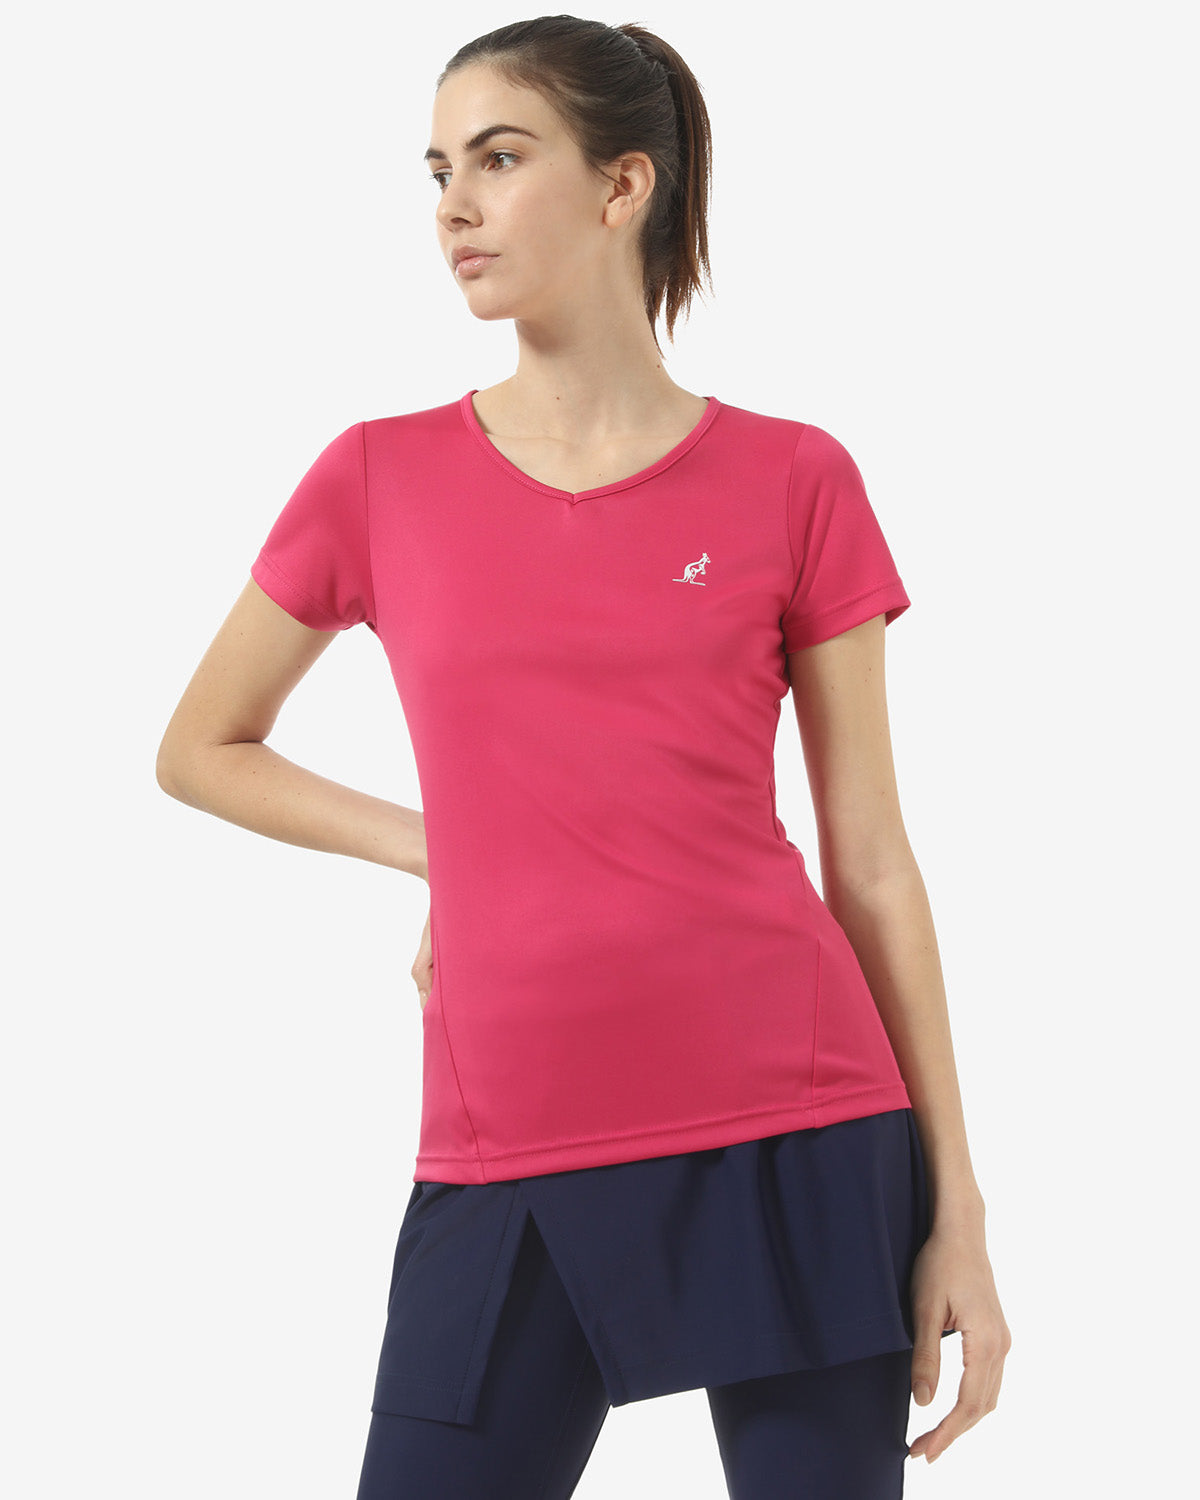 Drop T-Shirt: Australian Tennis